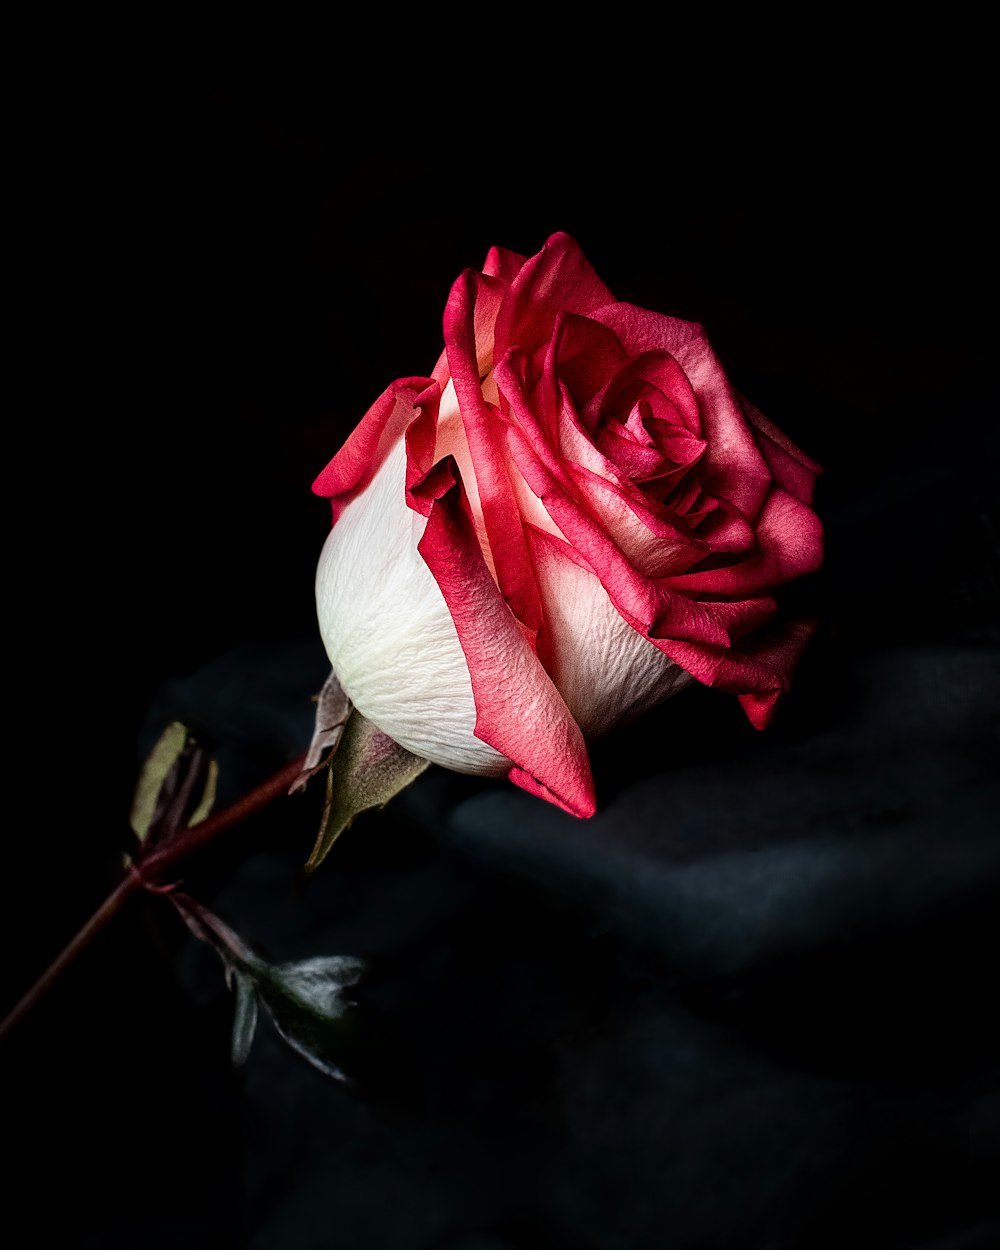 Fotografía de enfoque de flor de rosa roja y blanca